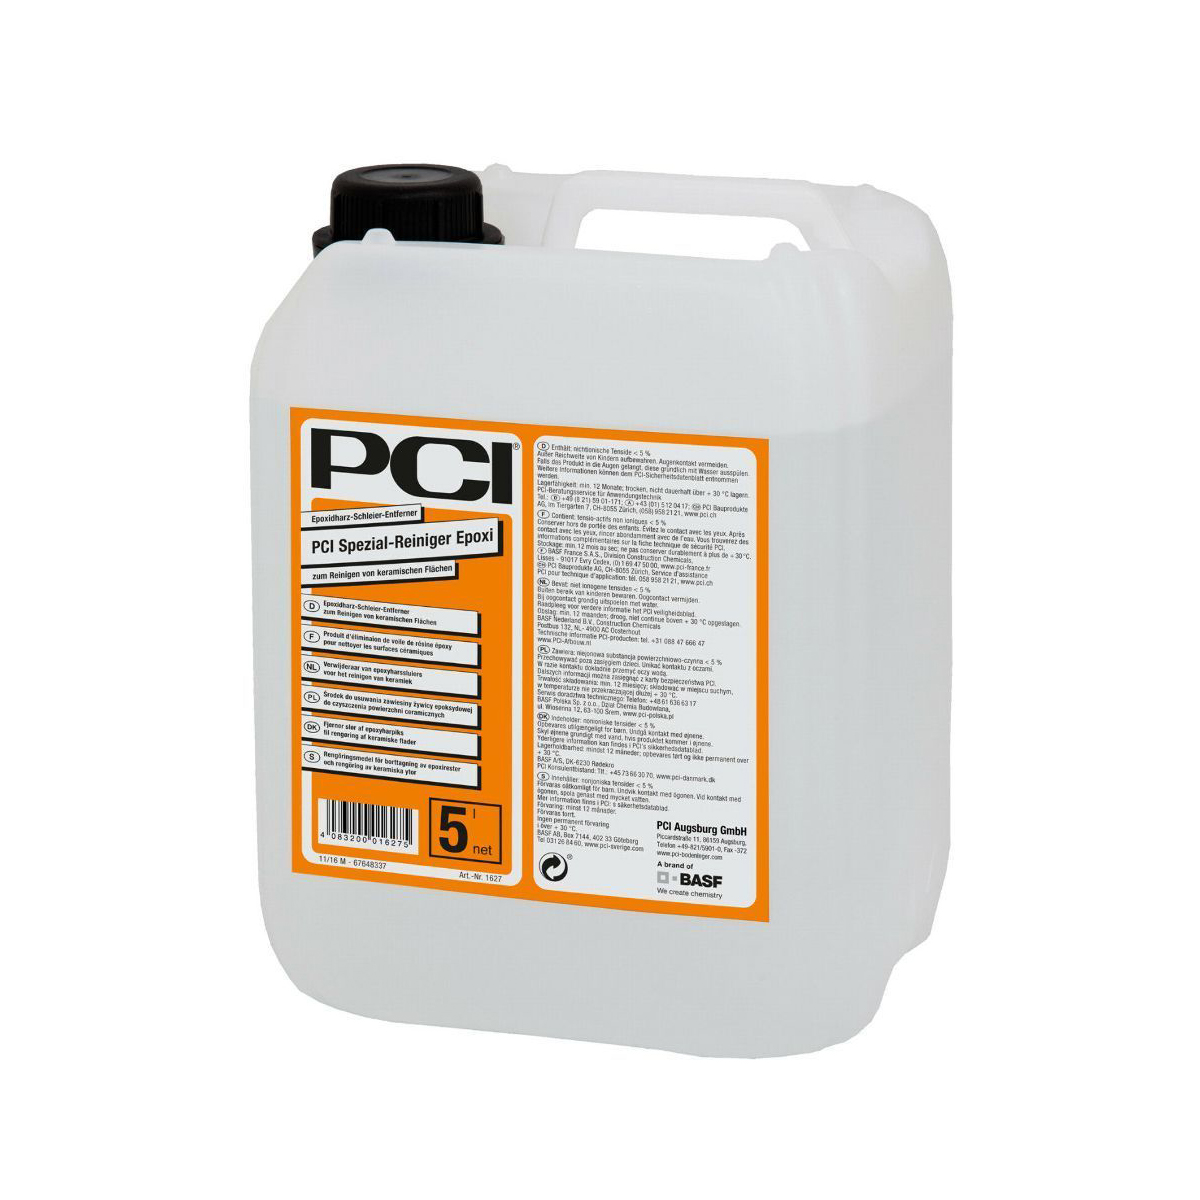 PCI Spezial-Reiniger Epoxi Reiniging van epoxyharsvlekken op keramische oppervlakken